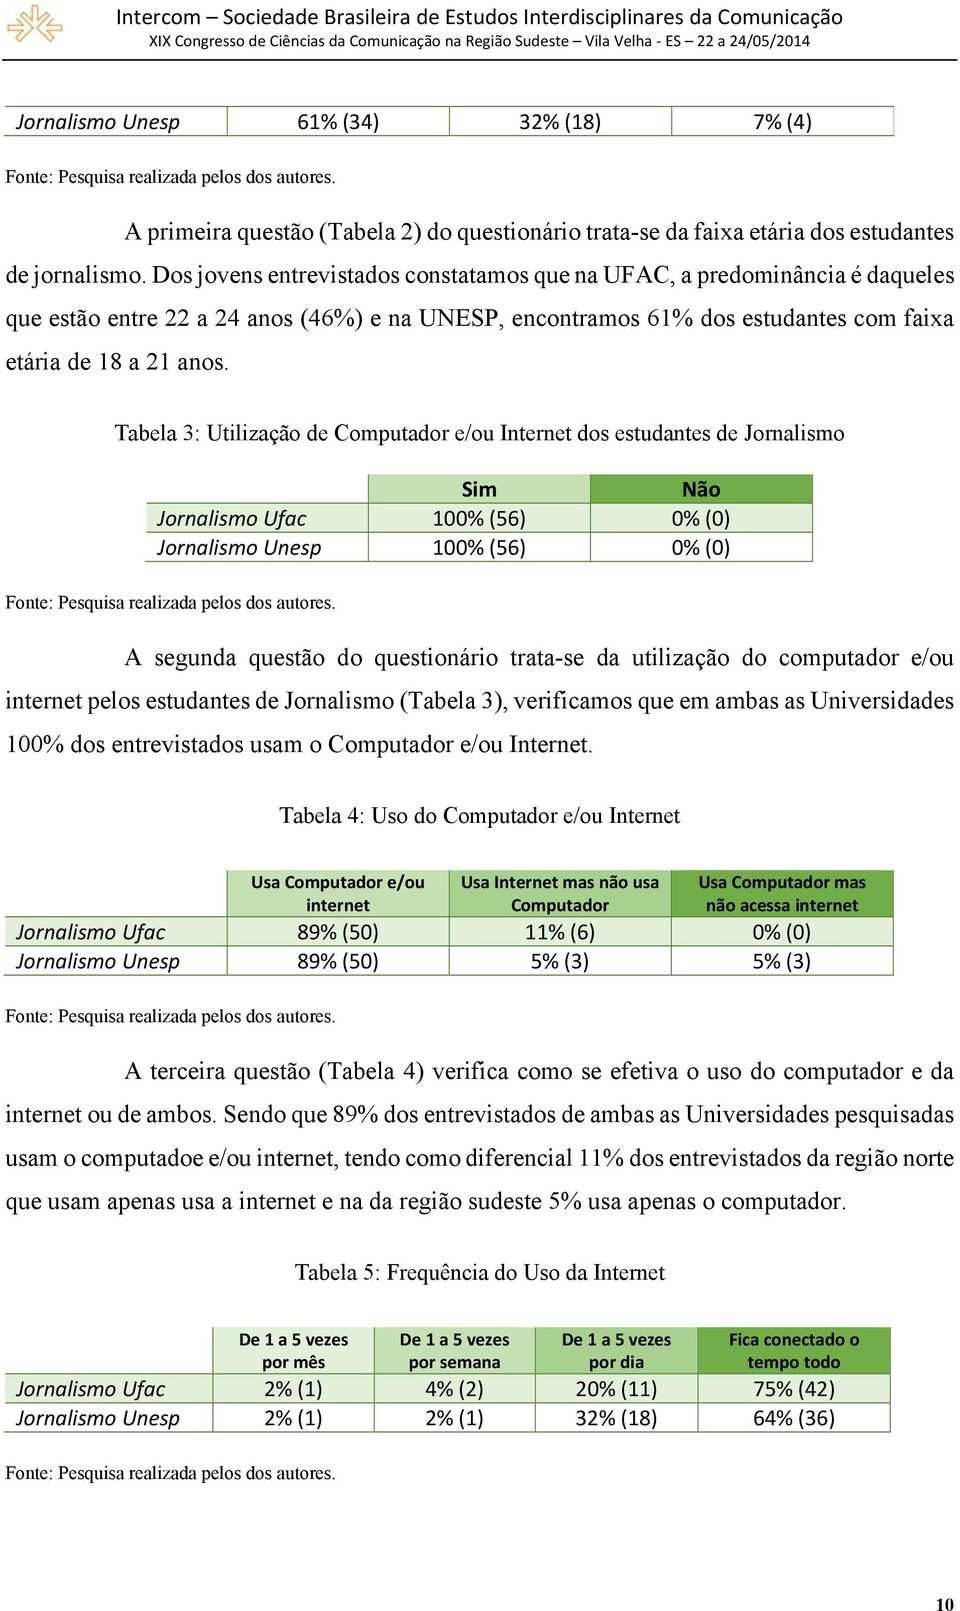 Tabela 3: Utilização de Computador e/ou Internet dos estudantes de Jornalismo Sim Não Jornalismo Ufac 100% (56) 0% (0) Jornalismo Unesp 100% (56) 0% (0) Fonte: Pesquisa realizada pelos dos autores.